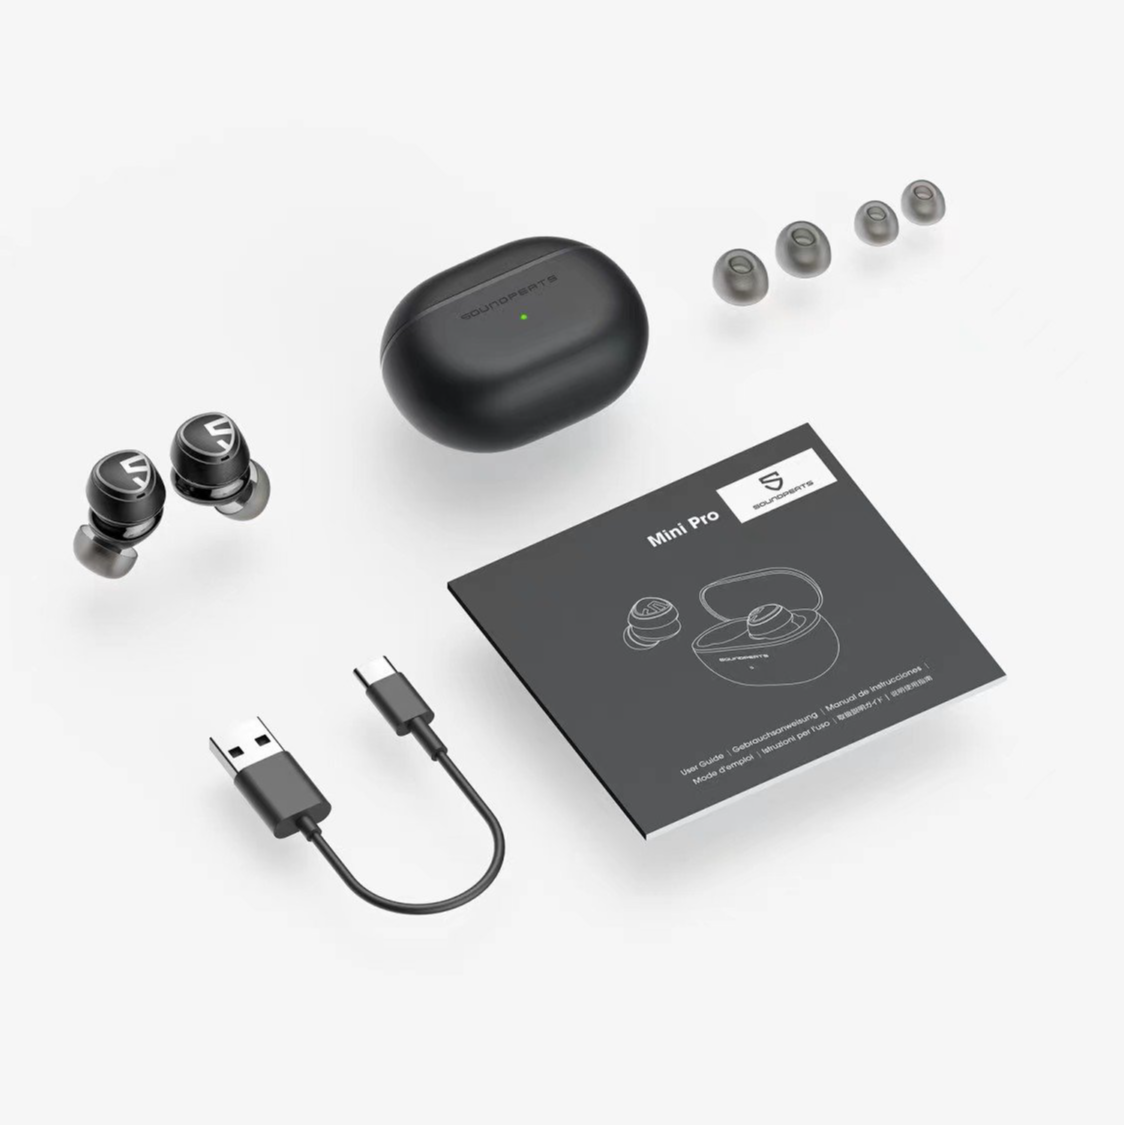 Tai nghe Bluetooth Earbuds SoundPeats Mini Pro - Hàng chính hãng